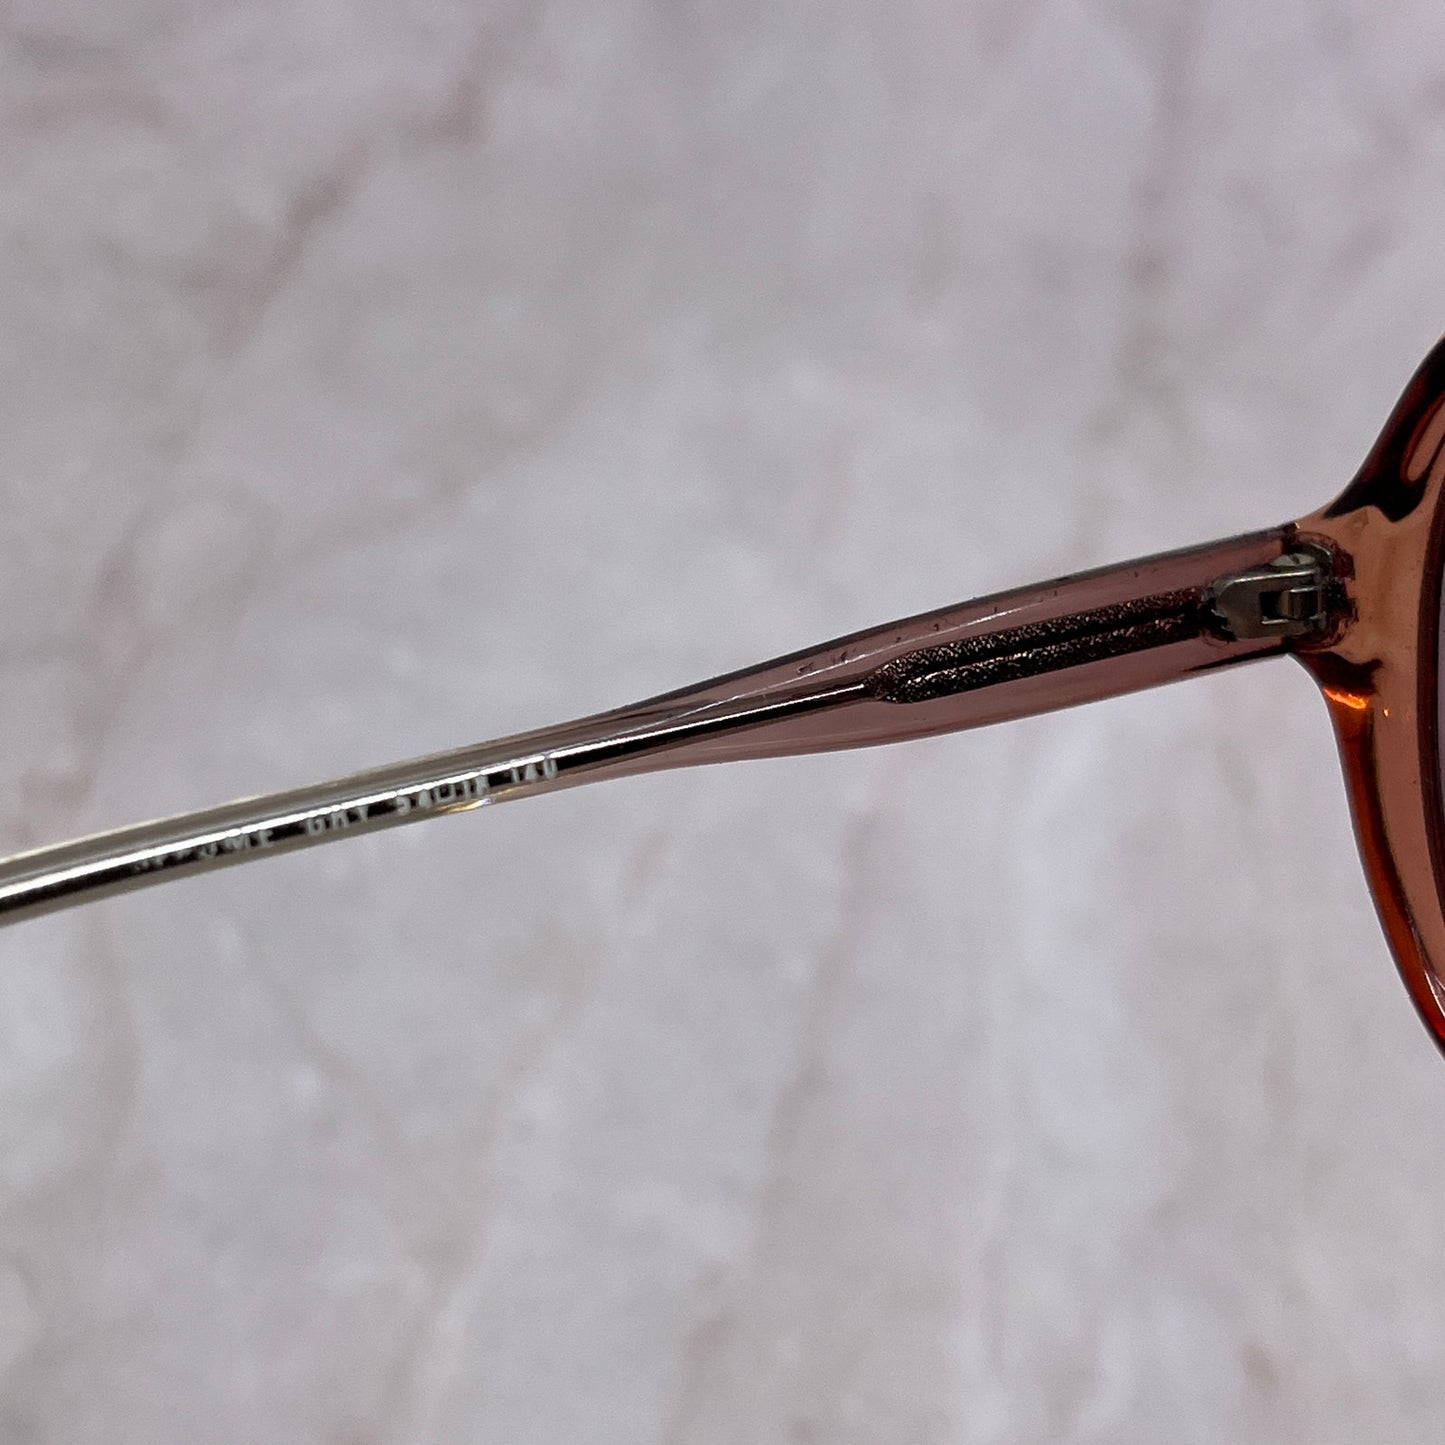 Retro Acrylic Ombre 54-18-140 Aviator Sunglasses Eyeglasses Frames TG7-G4-9